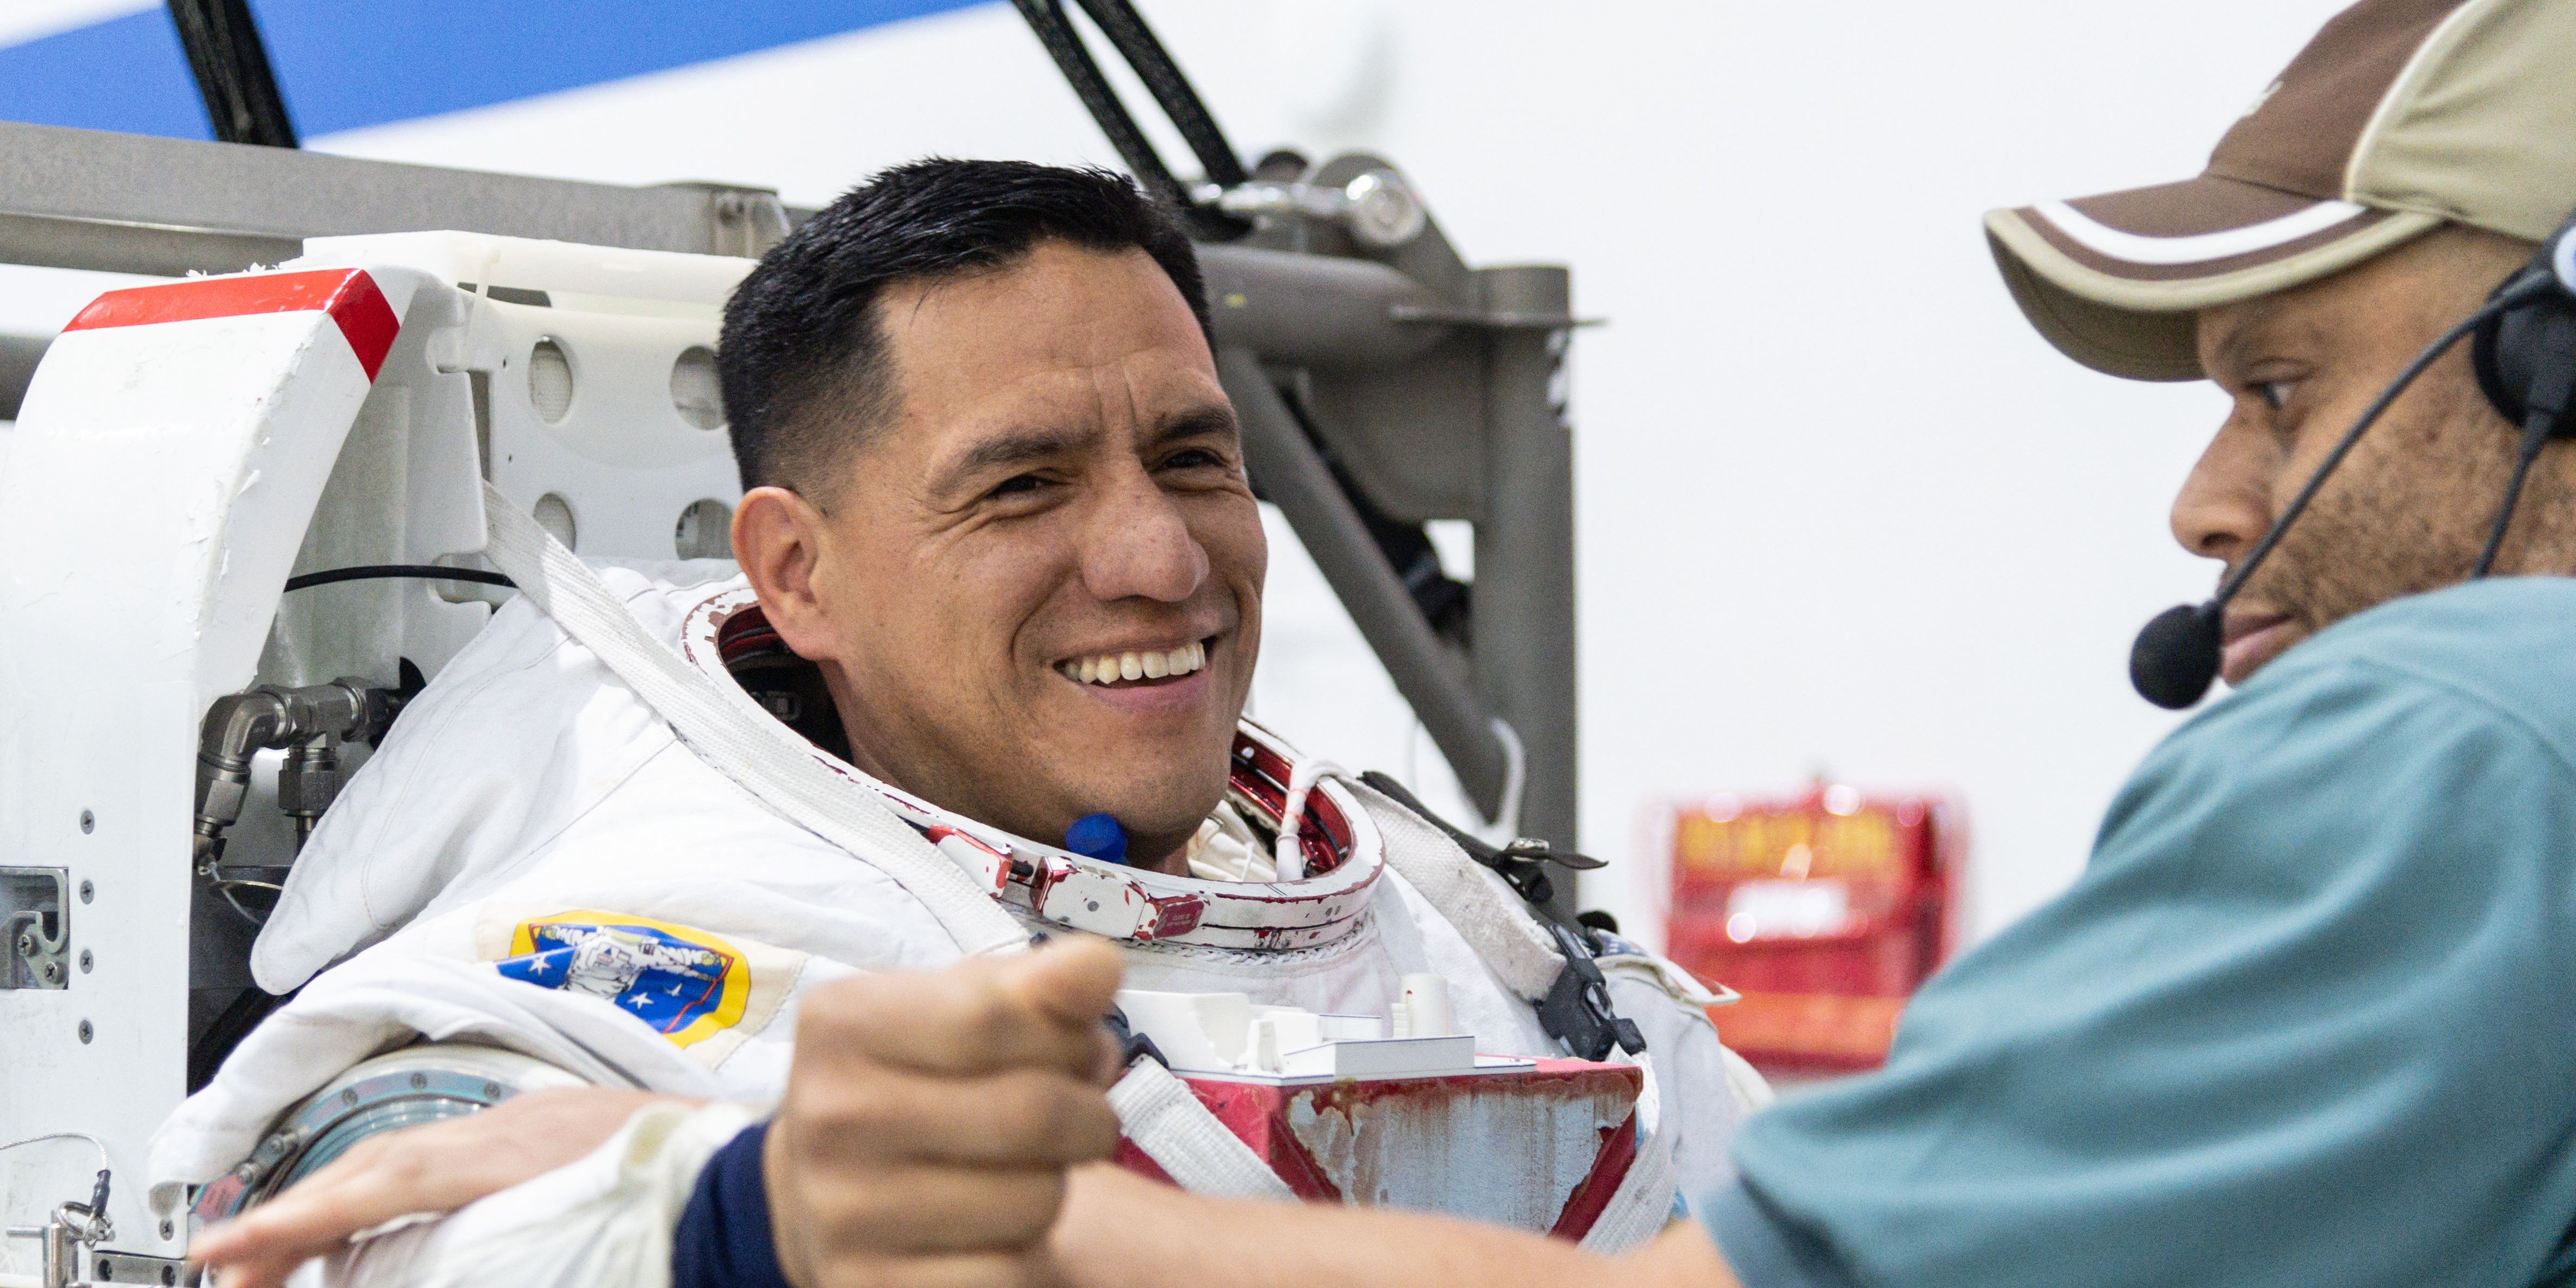 Frank Rubio recebe ajuda para vestir um traje espacial no Neutral Buoyancy Laboratory no Johnson Space Center da NASA em Houston para treinar para caminhadas espaciais